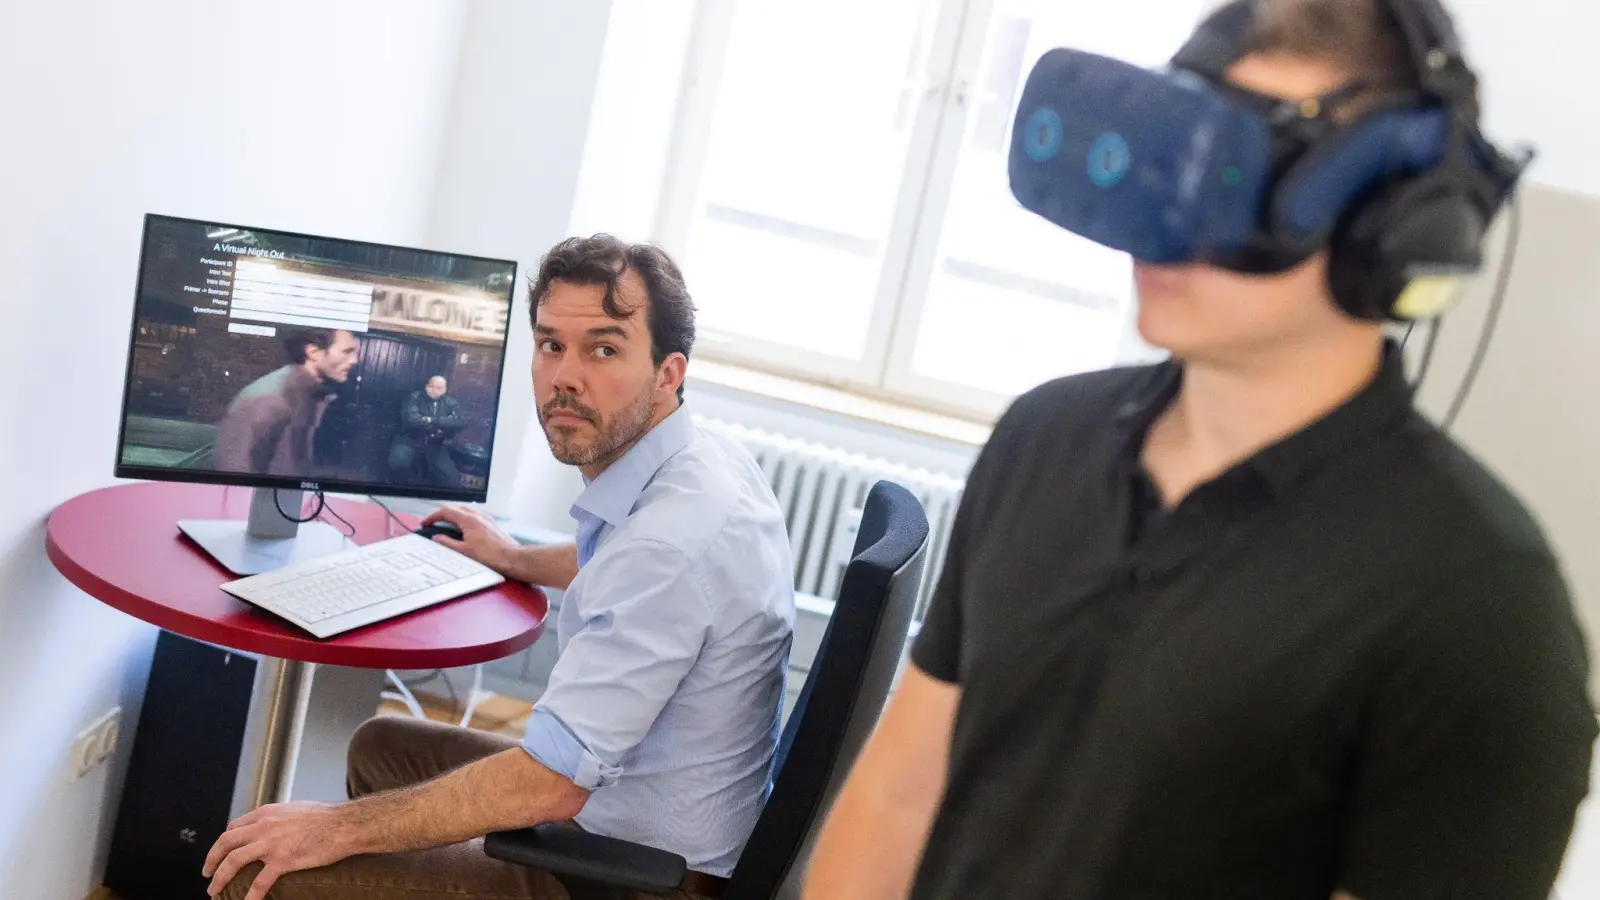 Das „MAXLab Freiburg“ ist das erste eigenständige kriminologische Forschungslabor weltweit, in dem Forschungsstudien und Experimente mit Virtual Reality und anderen neuen Technologien durchgeführt werden sollen. (Foto: Philipp von Ditfurth/dpa)